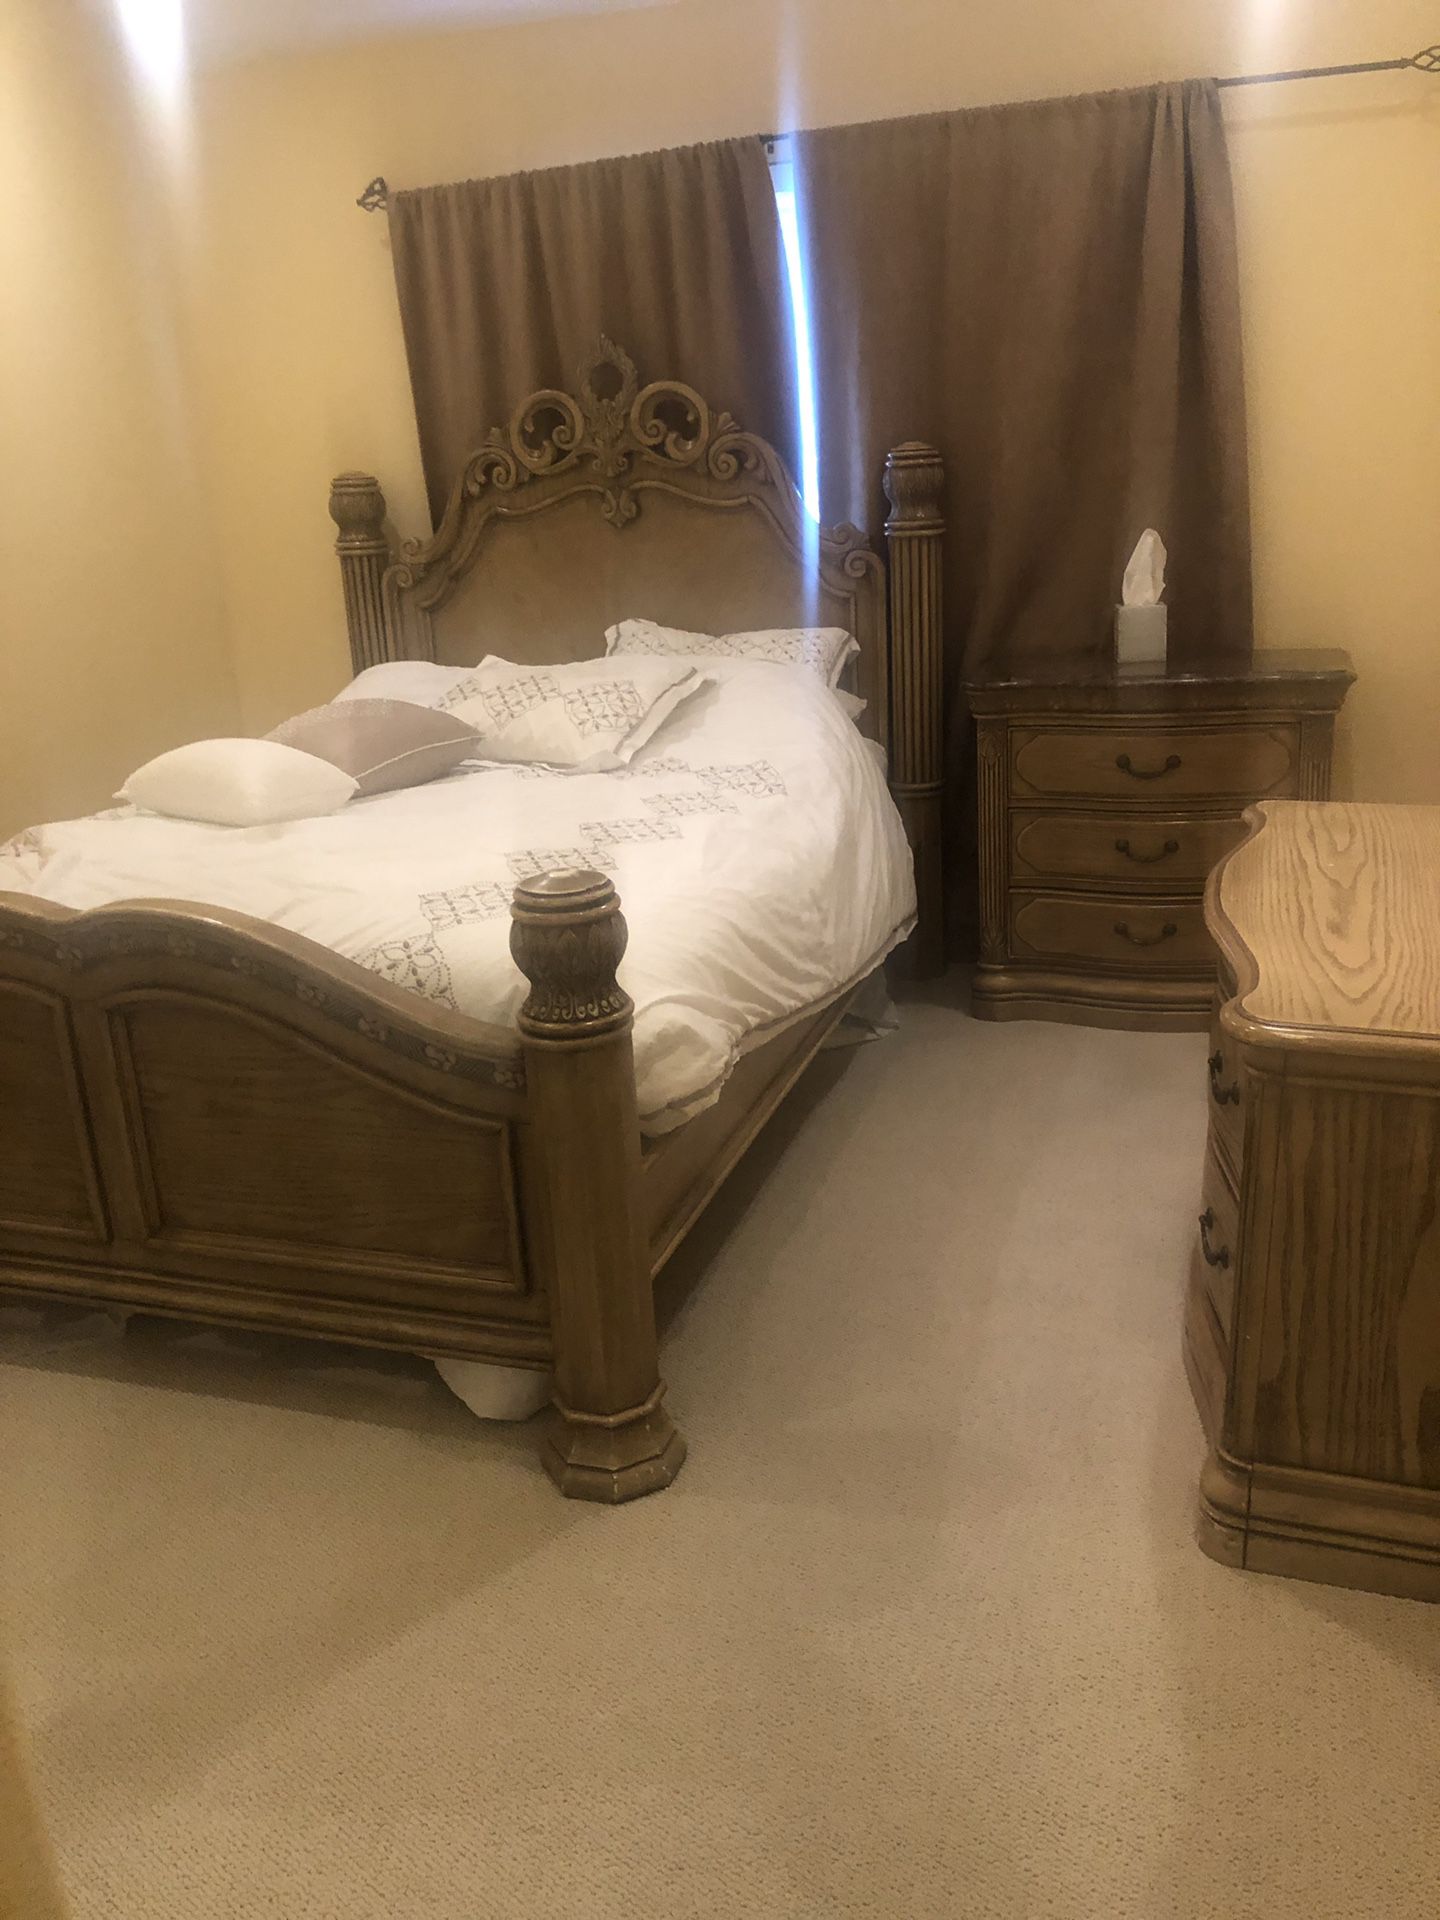 Solid wood heavy duty queen bedroom set